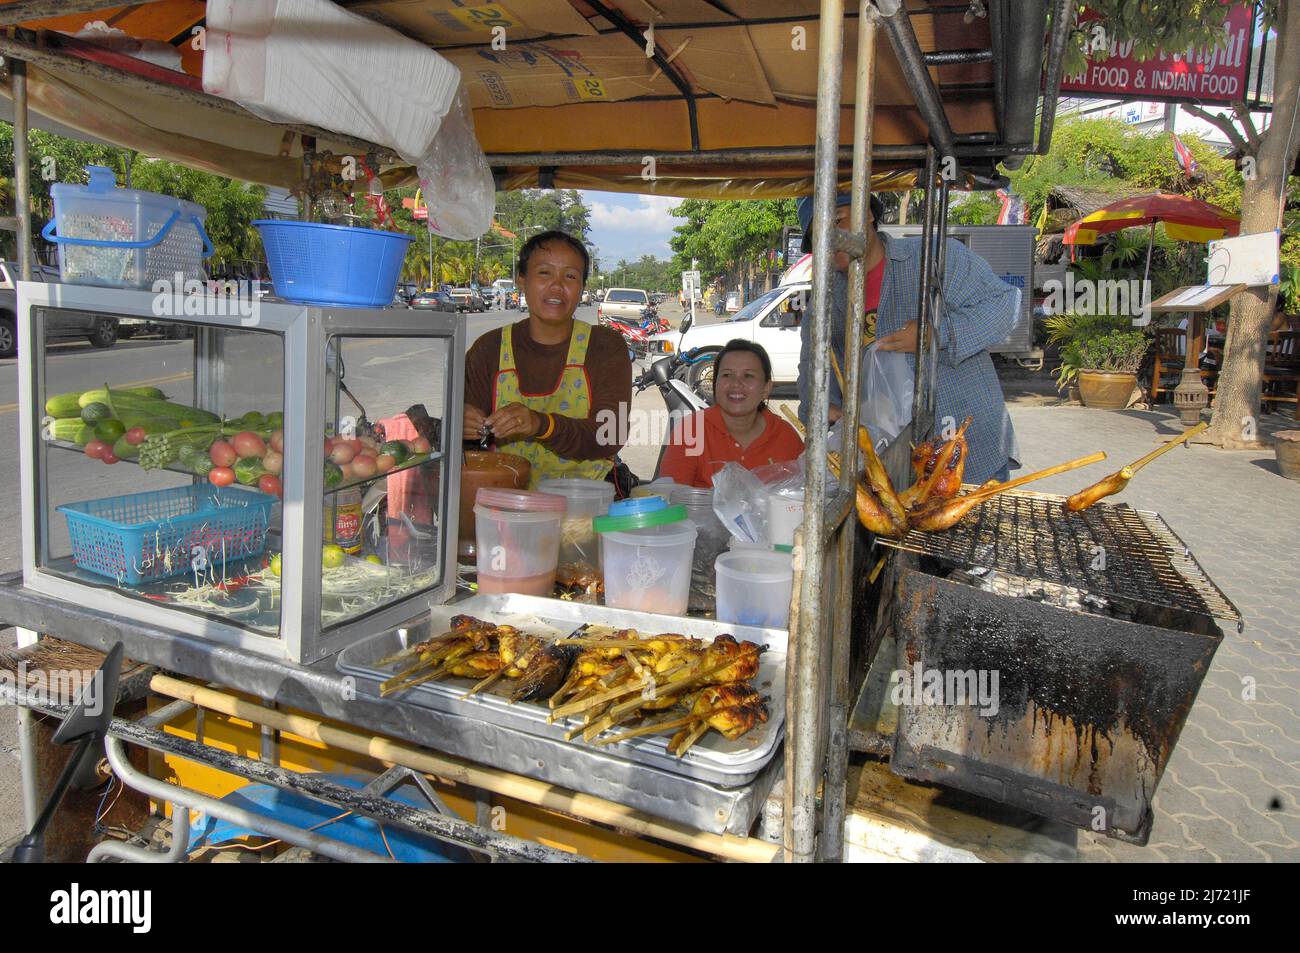 Auglage von fuer Thailand typische mobile Garkueche an Strassenrand, Ao Nang, Krabi, Thailand Foto Stock